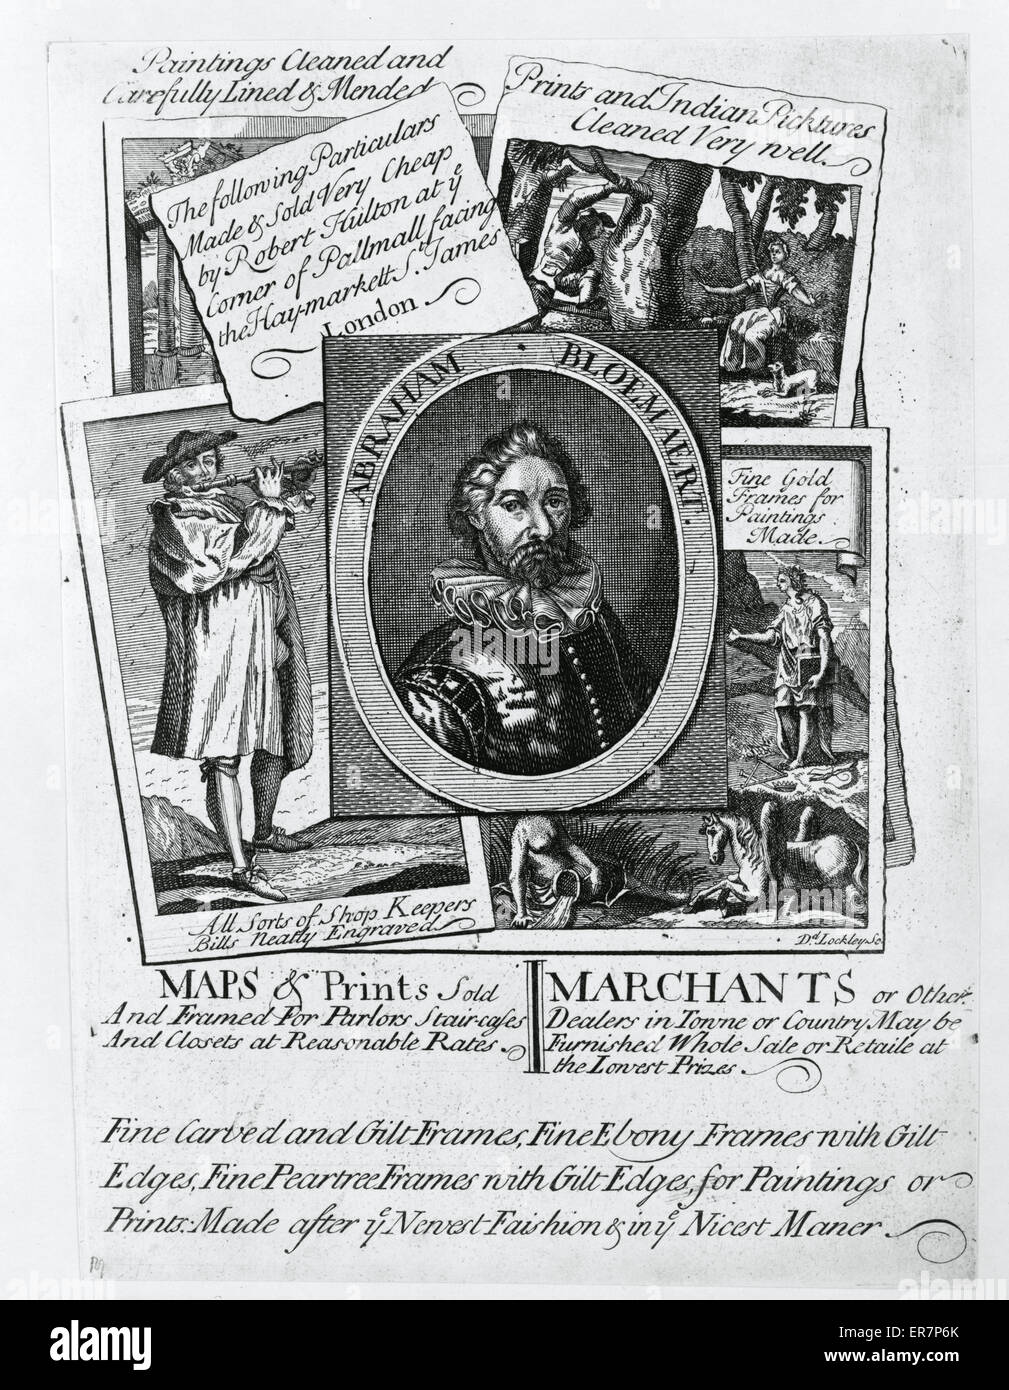 Karten und Drucke verkauft und gerahmten Druck, eine Werbung für Robert Hulton London-Shop zeigt die Typen der Ausdrucke verkauft und gerahmt in der Einrichtung. Enthält ein Porträt des holländischen Künstlers Abraham Bloemaert. Datum zwischen 1715 und 1730. Stockfoto